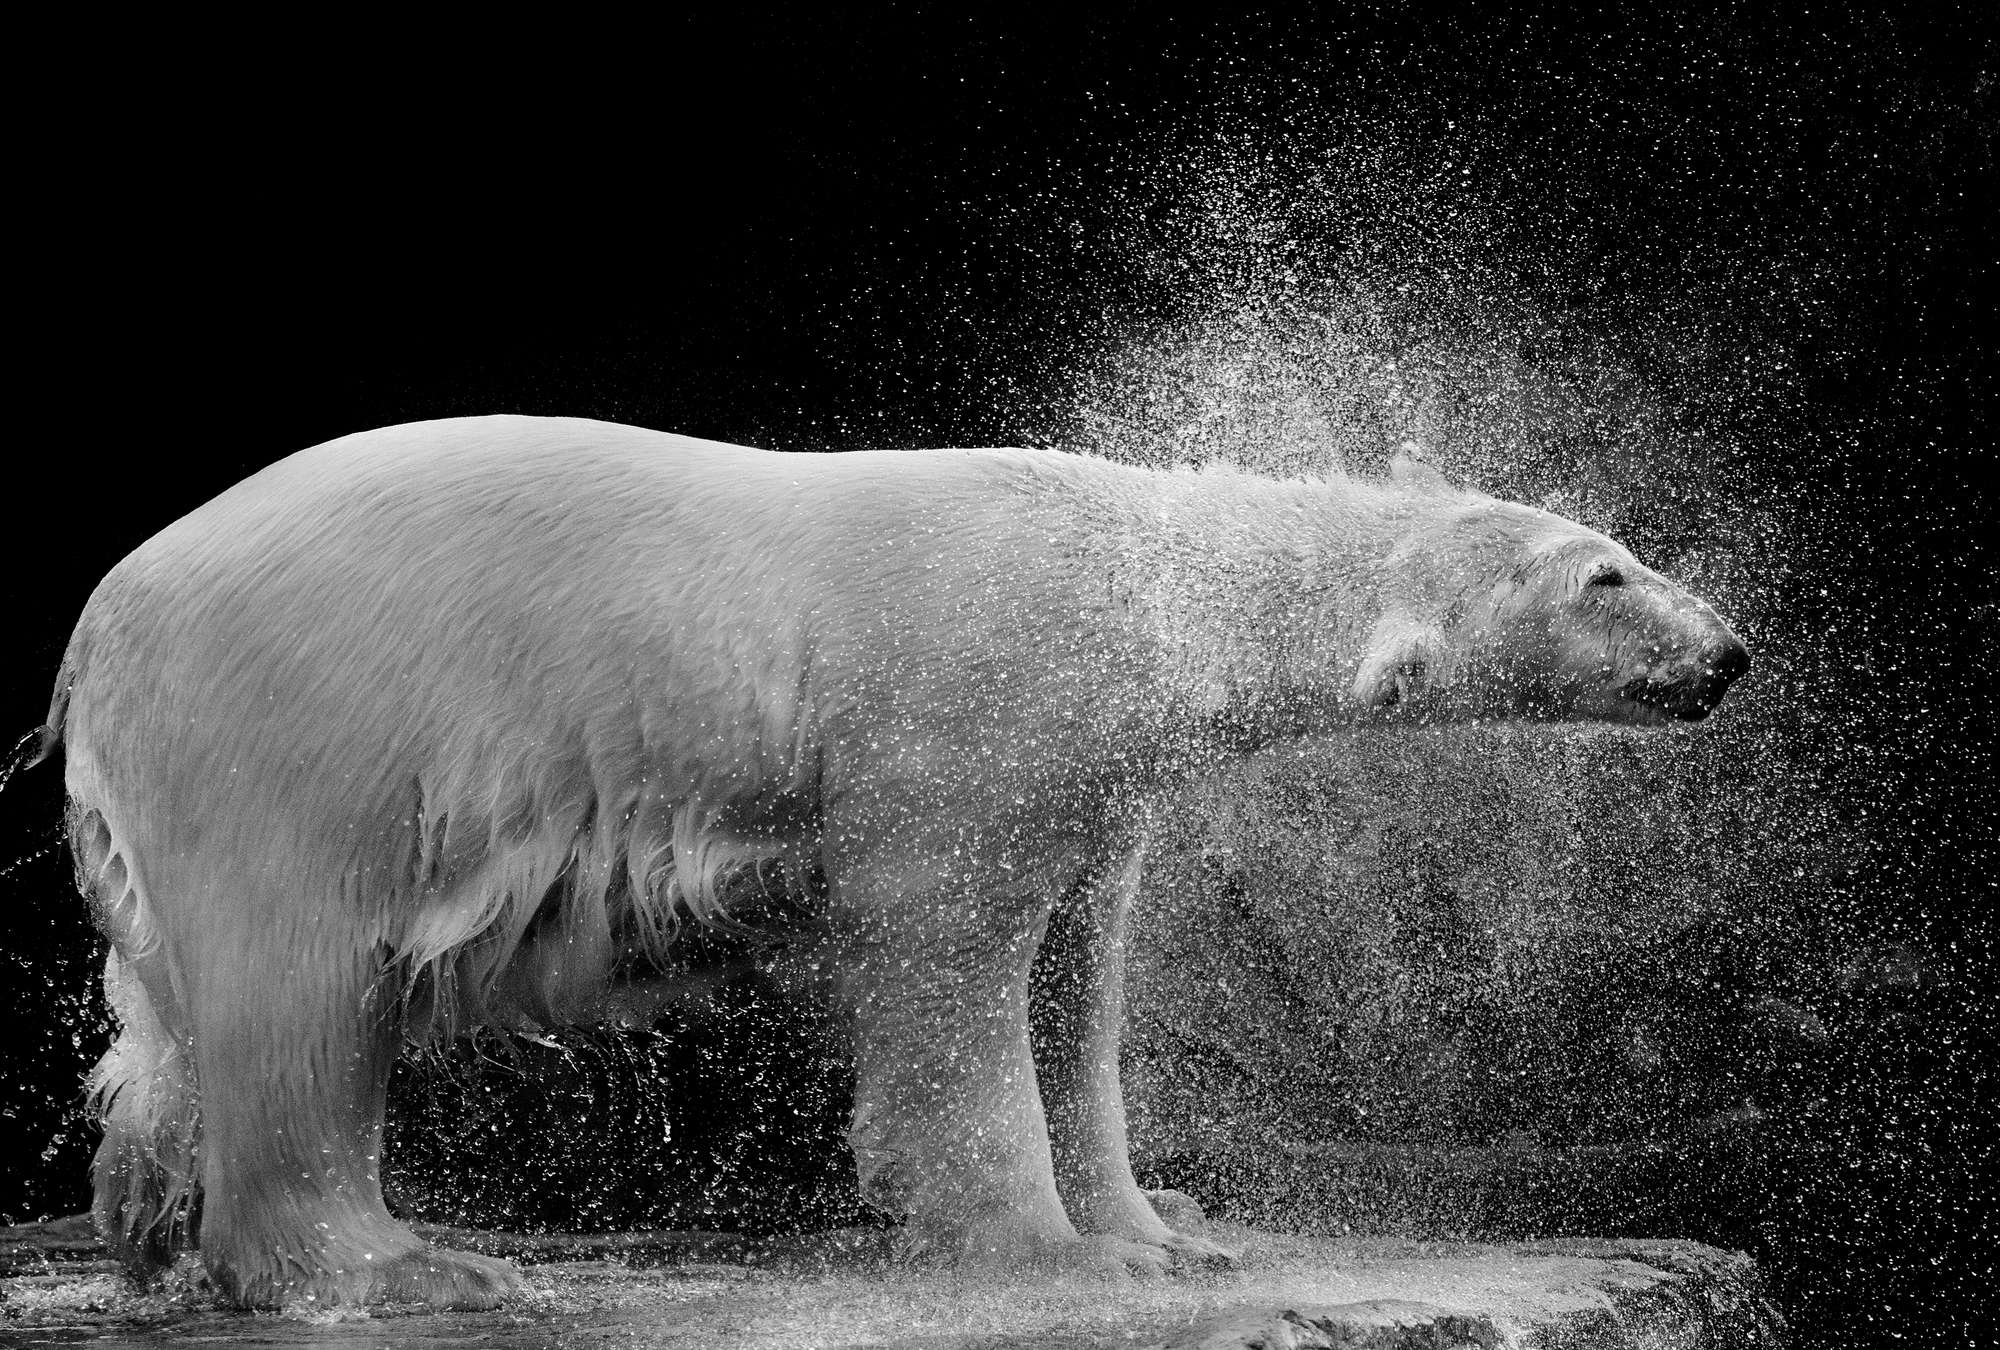             Fotomurali con orso polare bagnato su sfondo nero
        